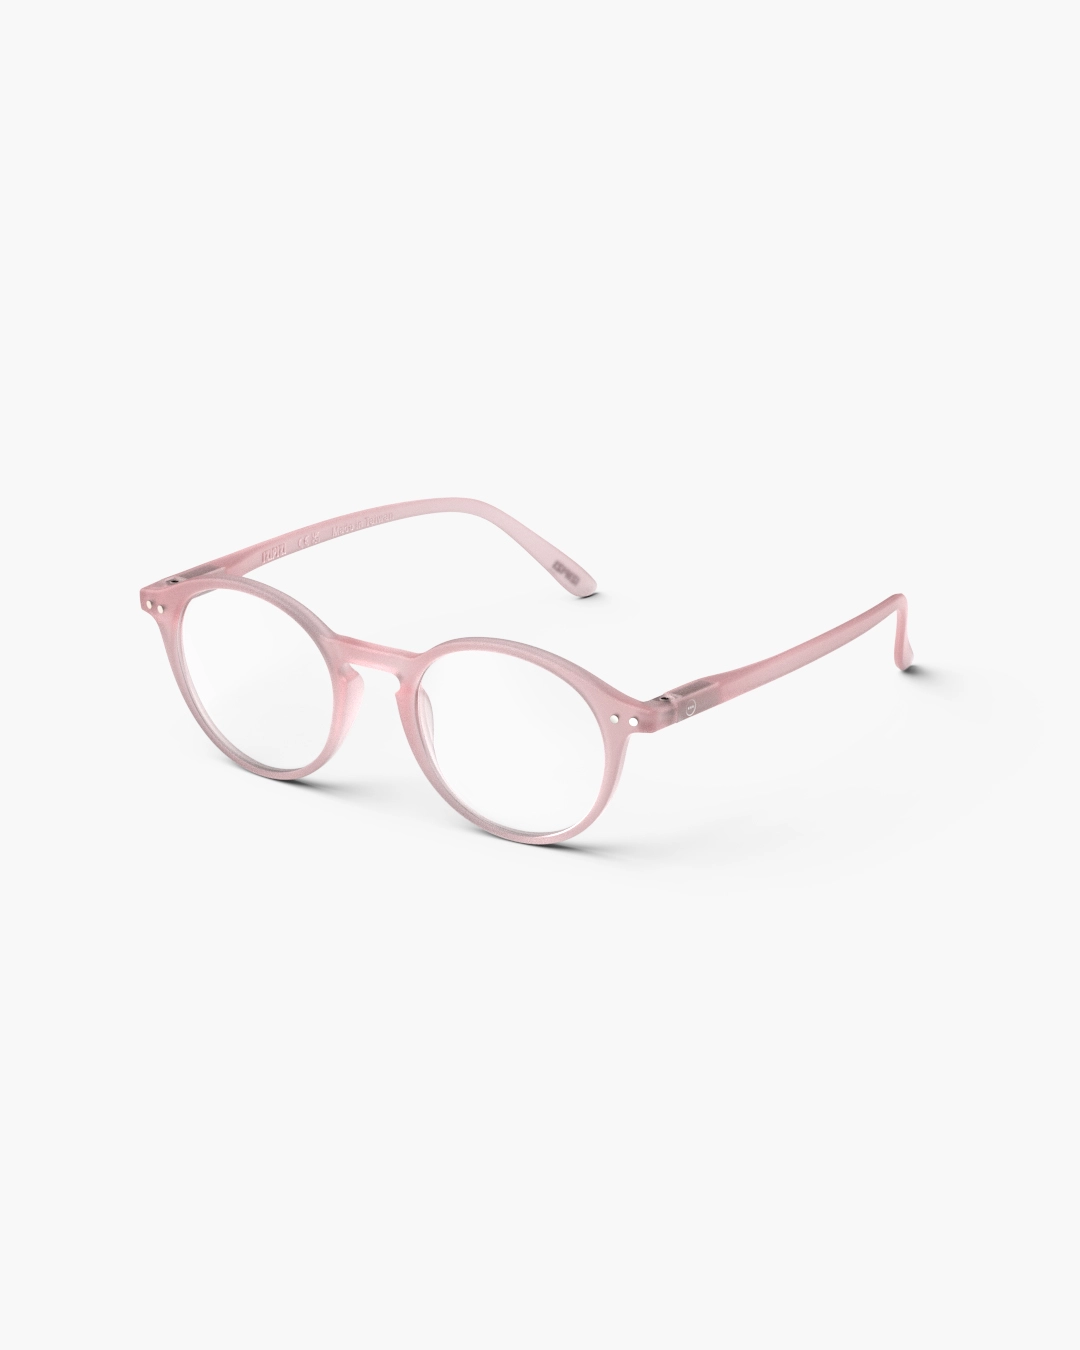 IZIPIZI #D Pink Reading Glasses +1.5